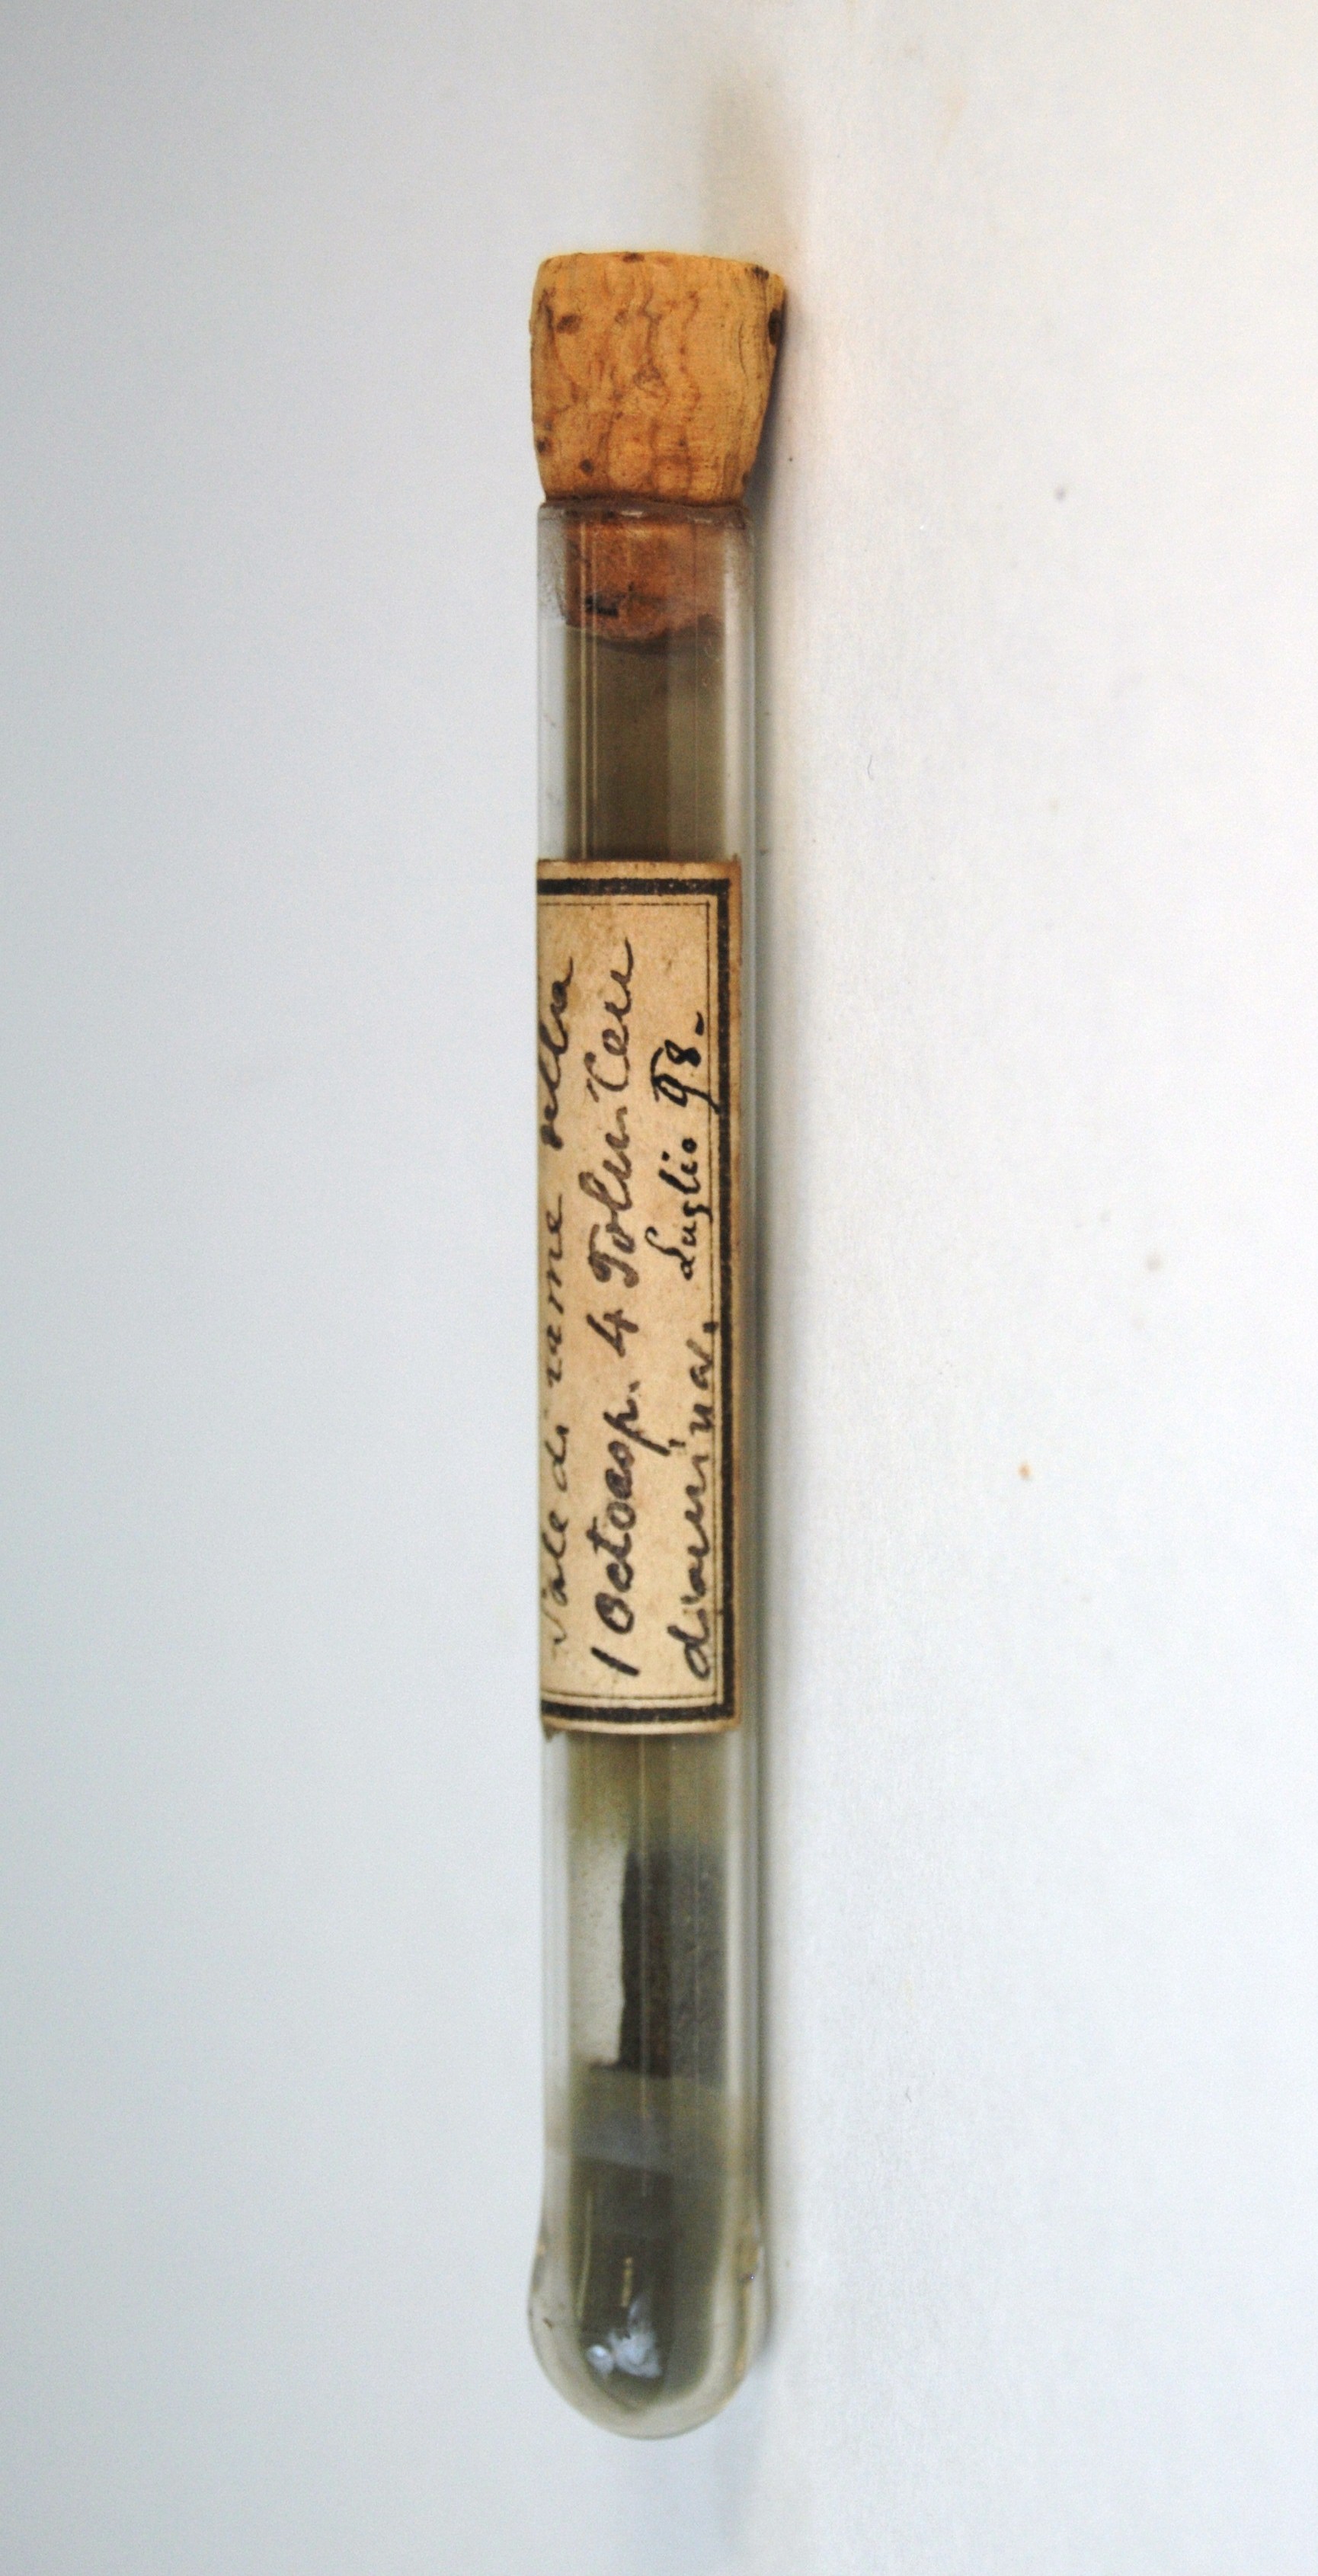 sale di rame della 1 ottospartide (prodotto chimico, di sintesi) di Ugo Schiff (laboratorio) - scuola chimica fiorentina (metà/ inizio XIX/ XX)